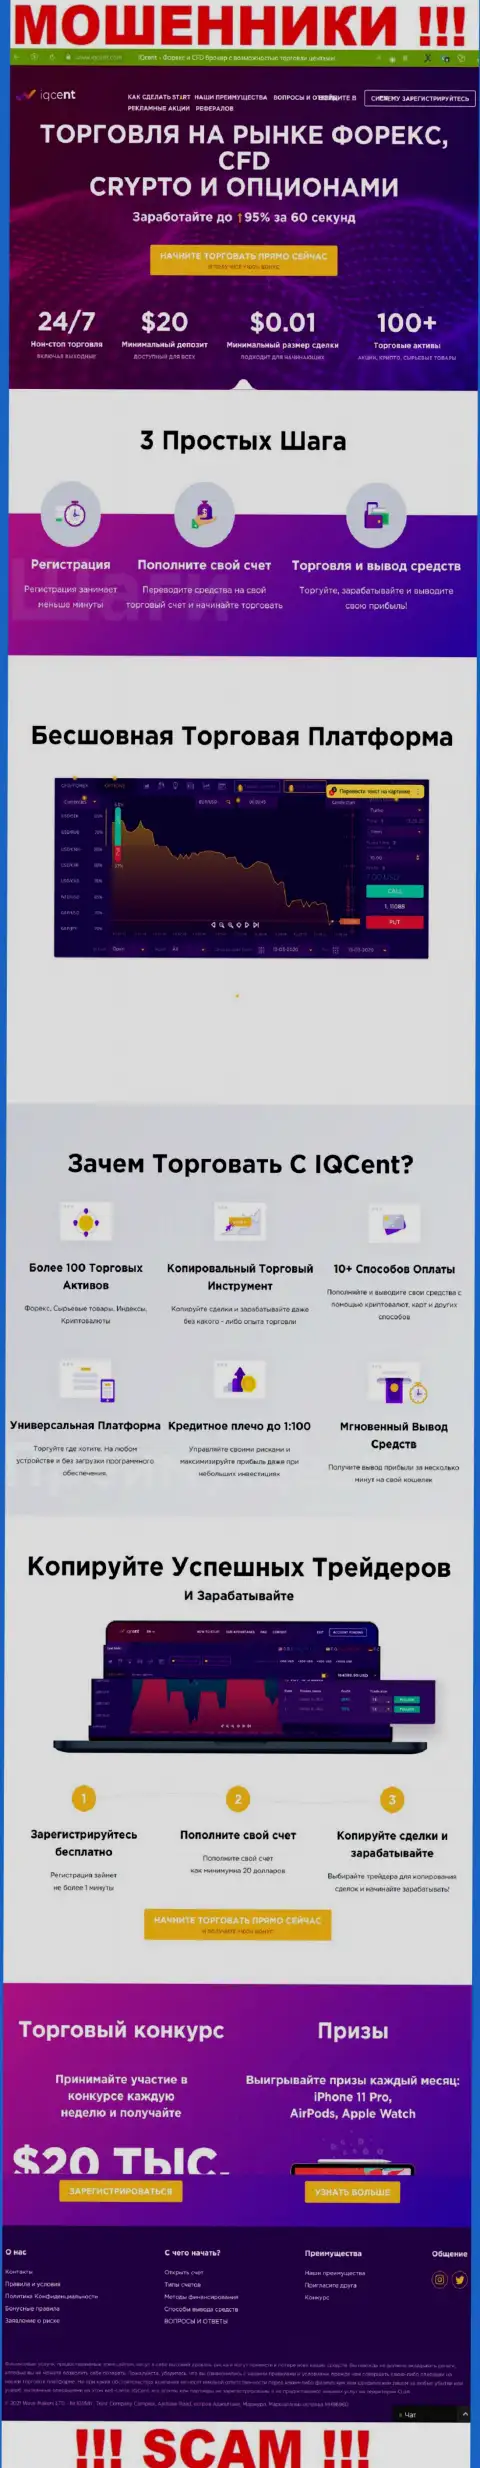 Официальный интернет-портал разводил IQCent, заполненный материалами для лохов